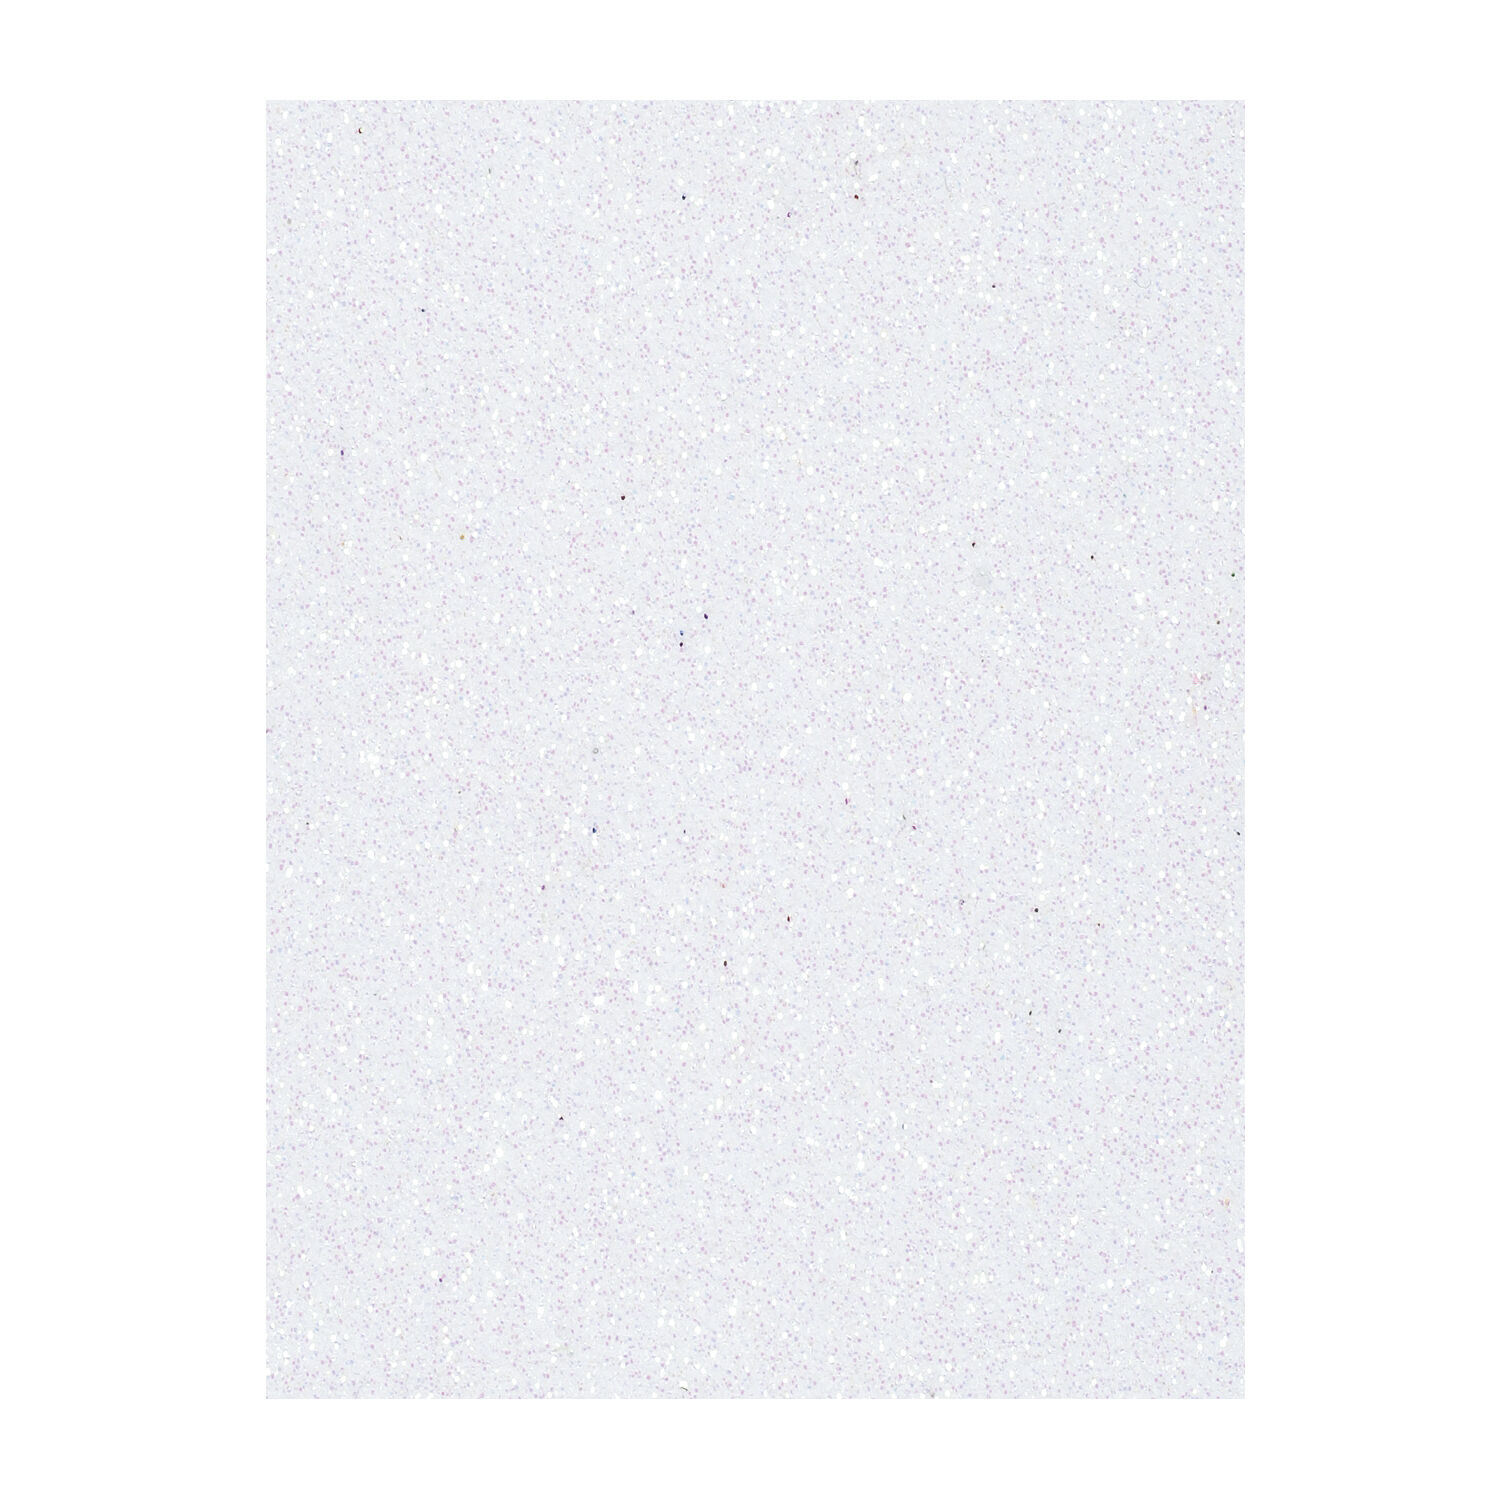 NEU Moosgummiplatte, Glitzer / Glitter, Stärke 2mm, Größe 20x30cm, weiß